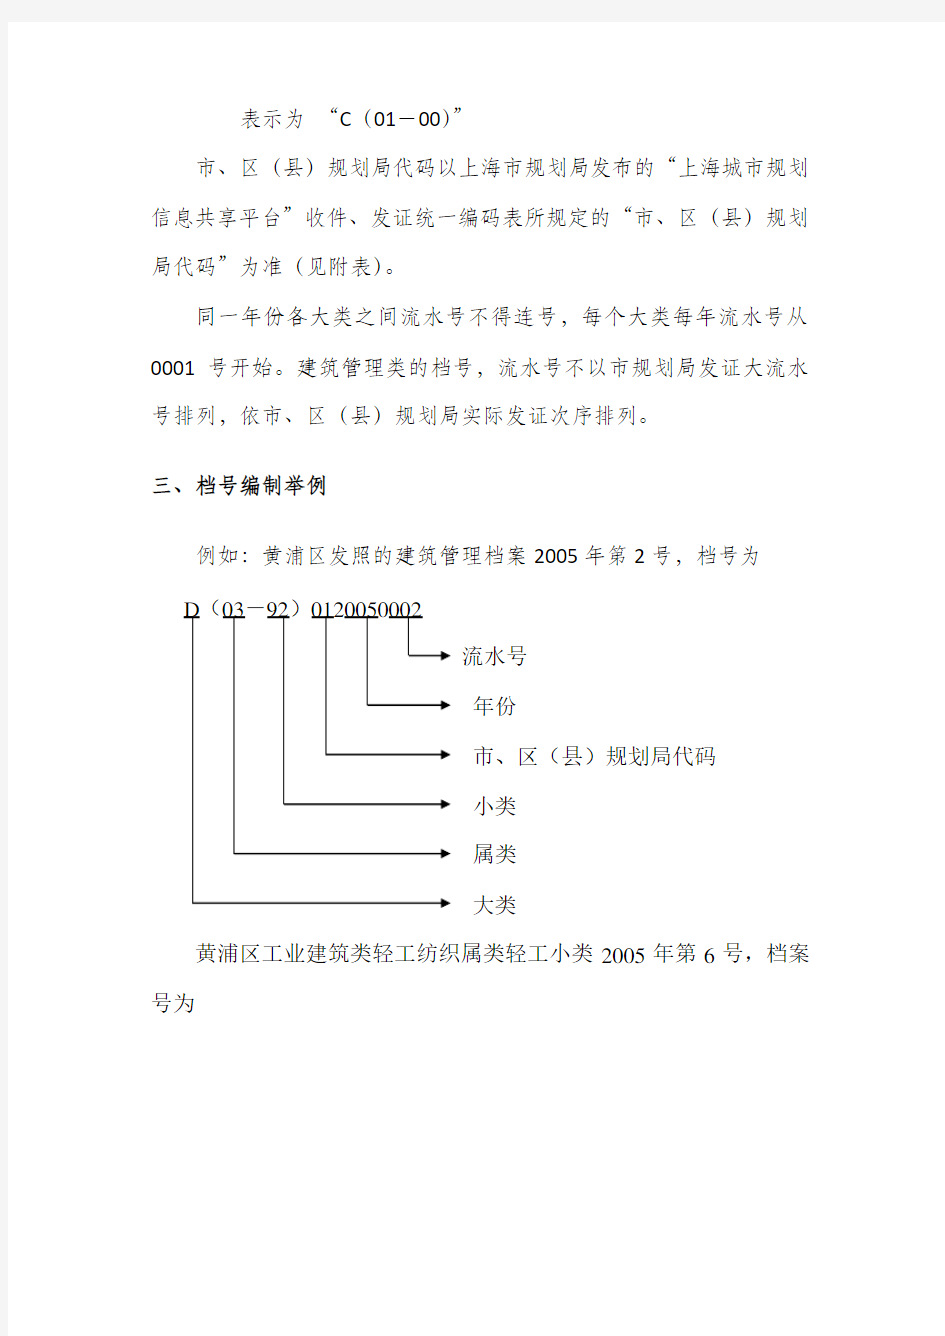 上海市城建档案档号编制方法及分类大纲——沪城档办[2005]3号